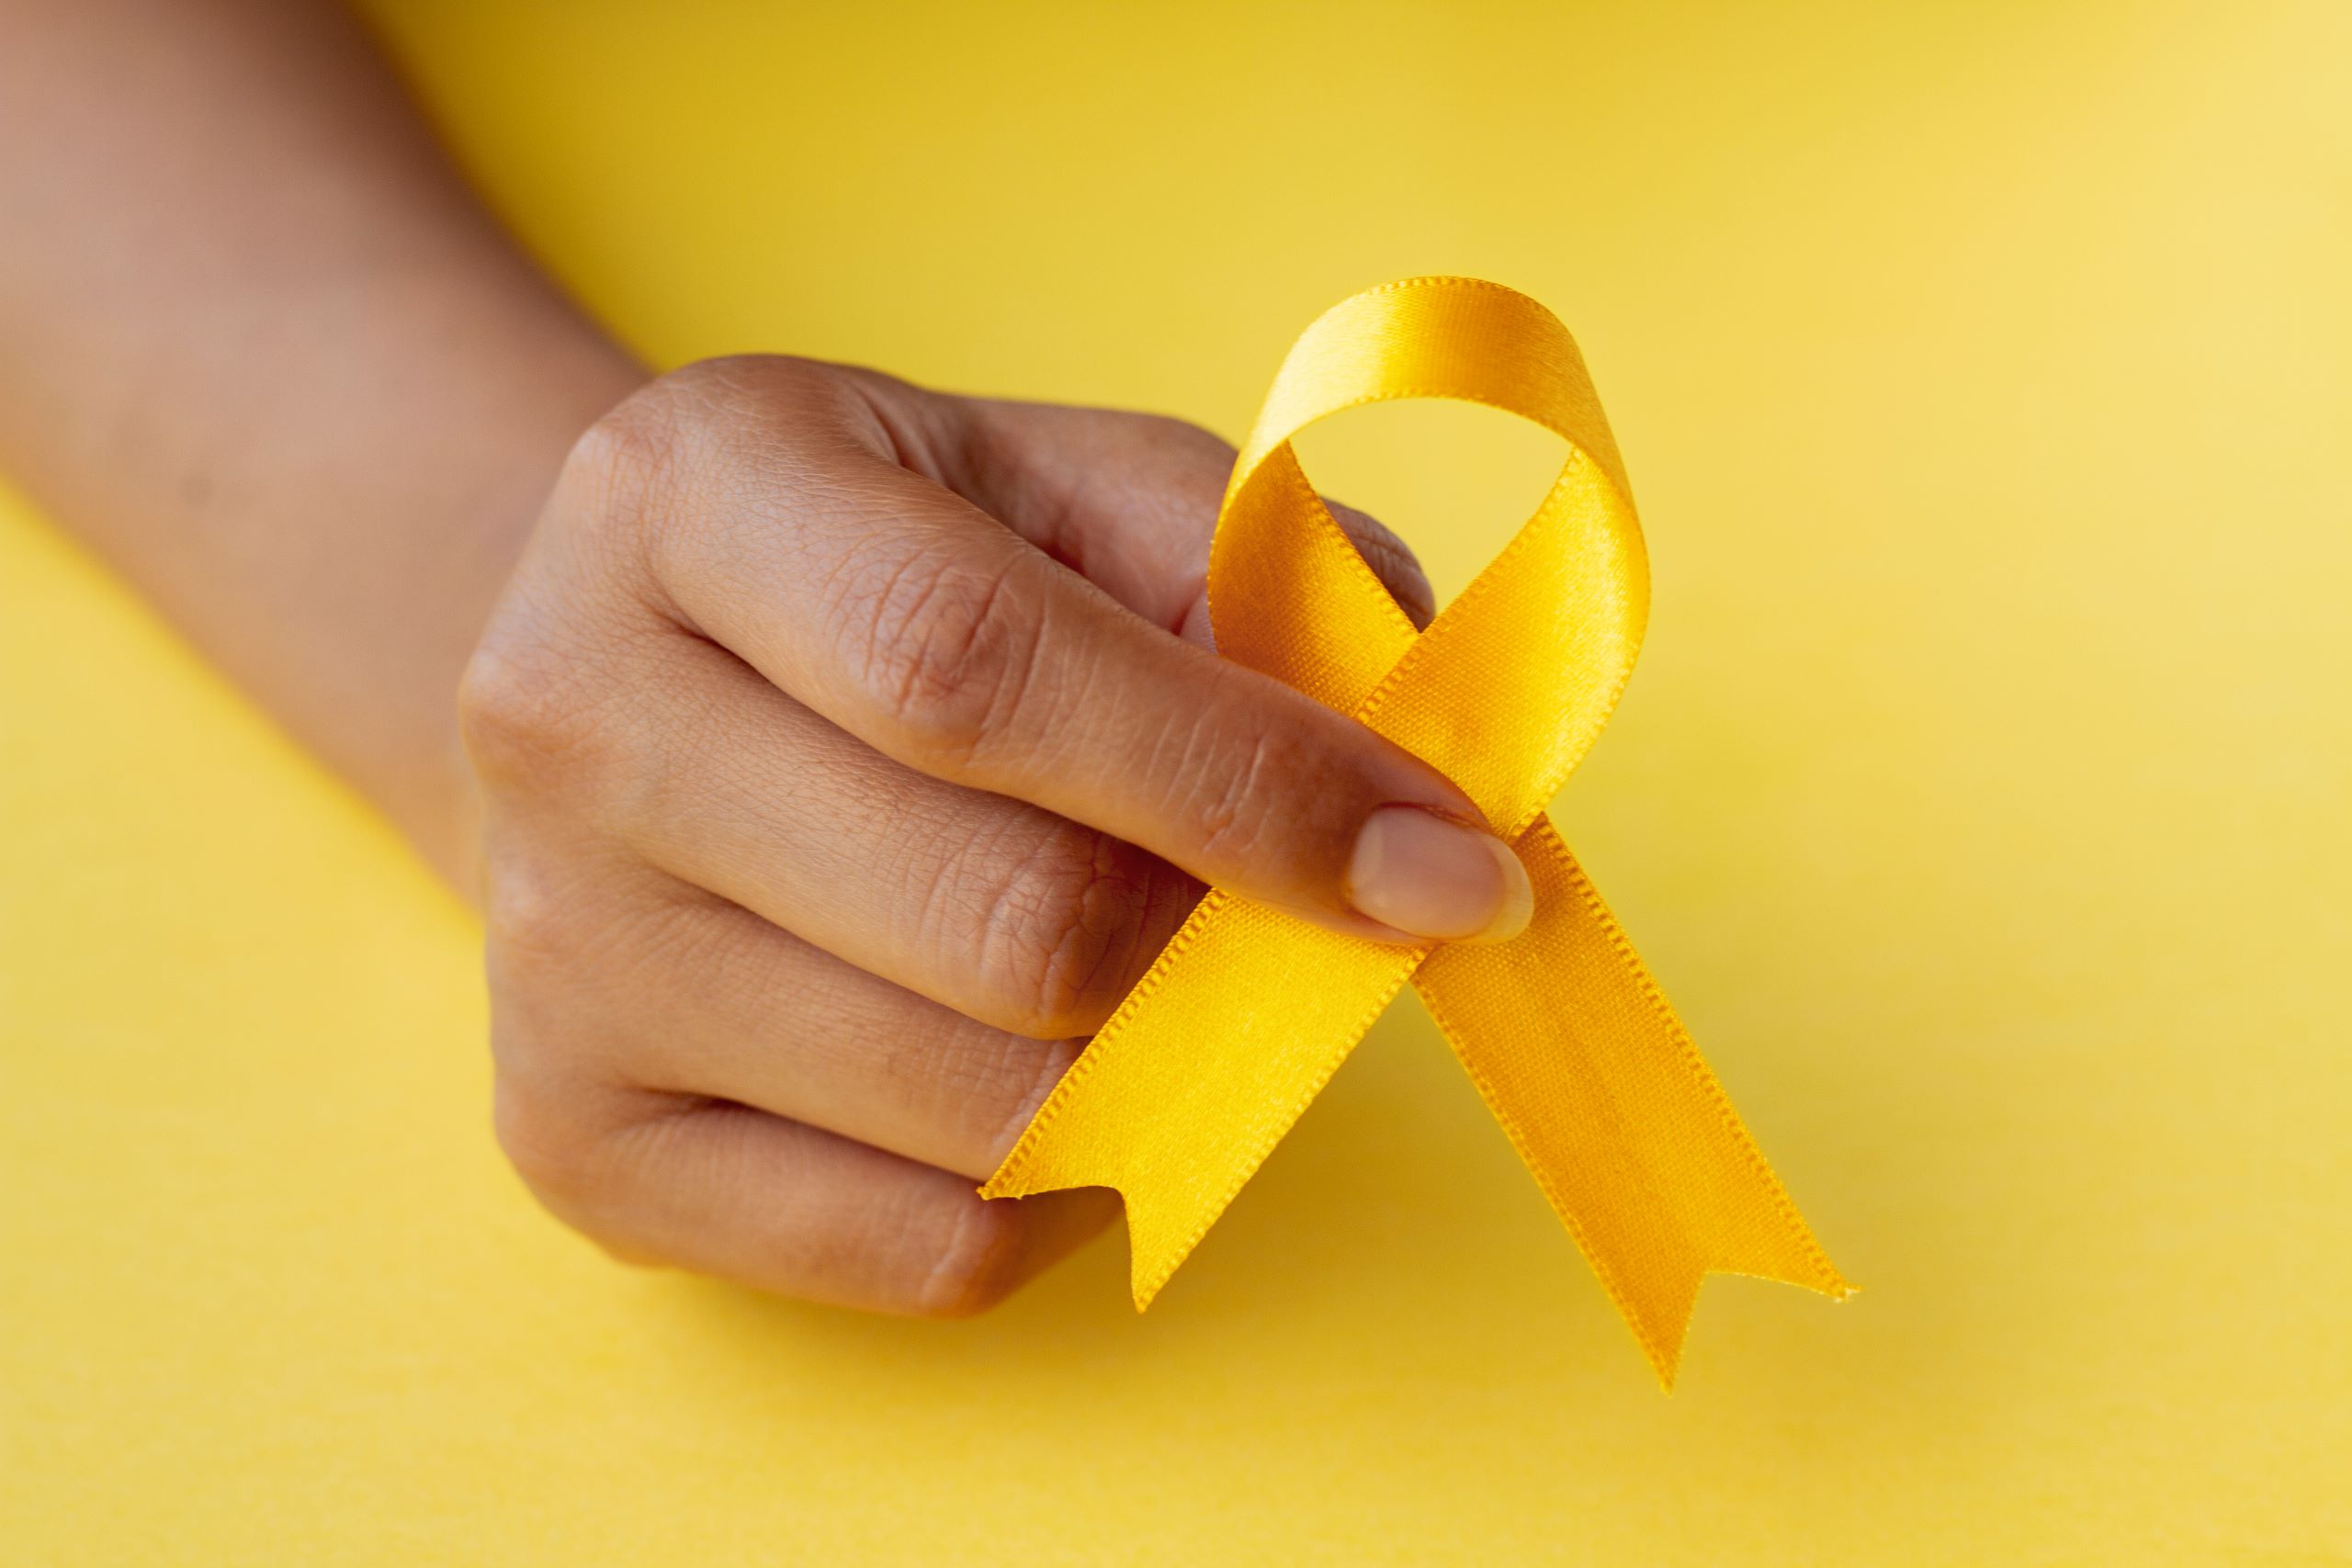 O Setembro Amarelo é uma campanha global de conscientização sobre a prevenção do suicídio. À medida que essa importante causa ganha destaque, é crucial que as empresas desempenhem um papel ativo na conscientização e no apoio aos seus funcionários.